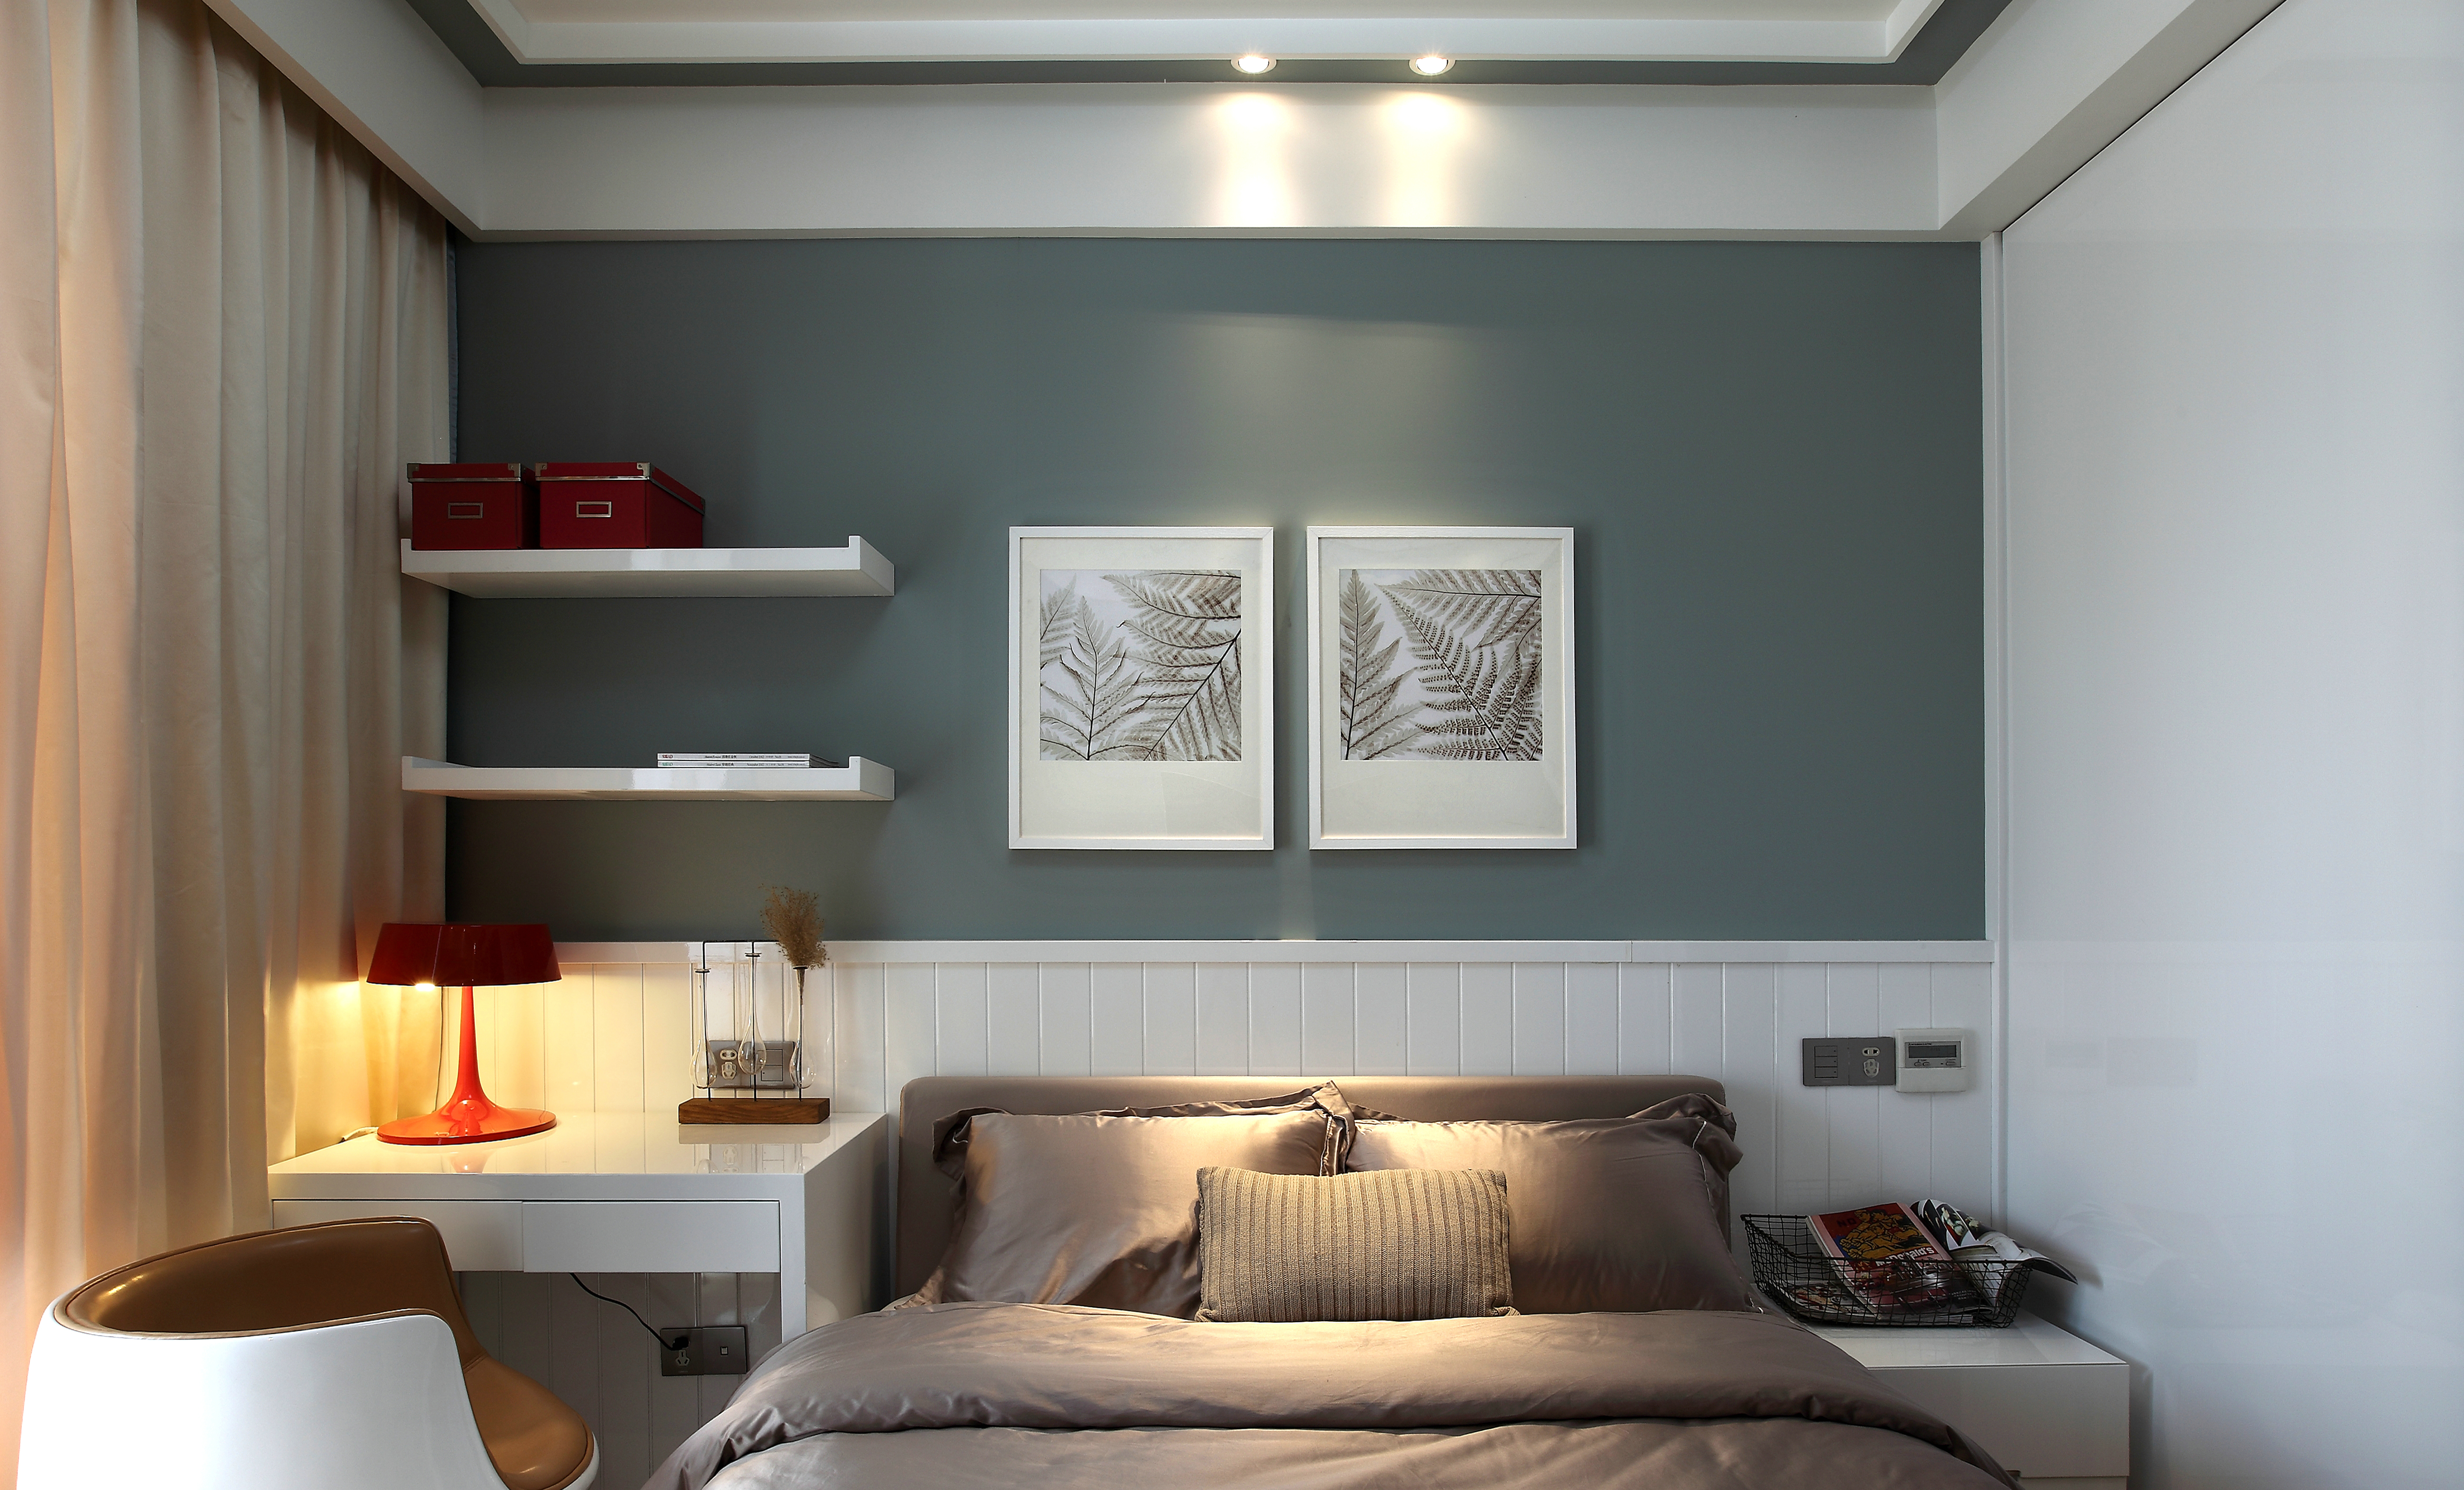 次卧充分利用空间，以简单的设计安排了使用的收纳展示架。